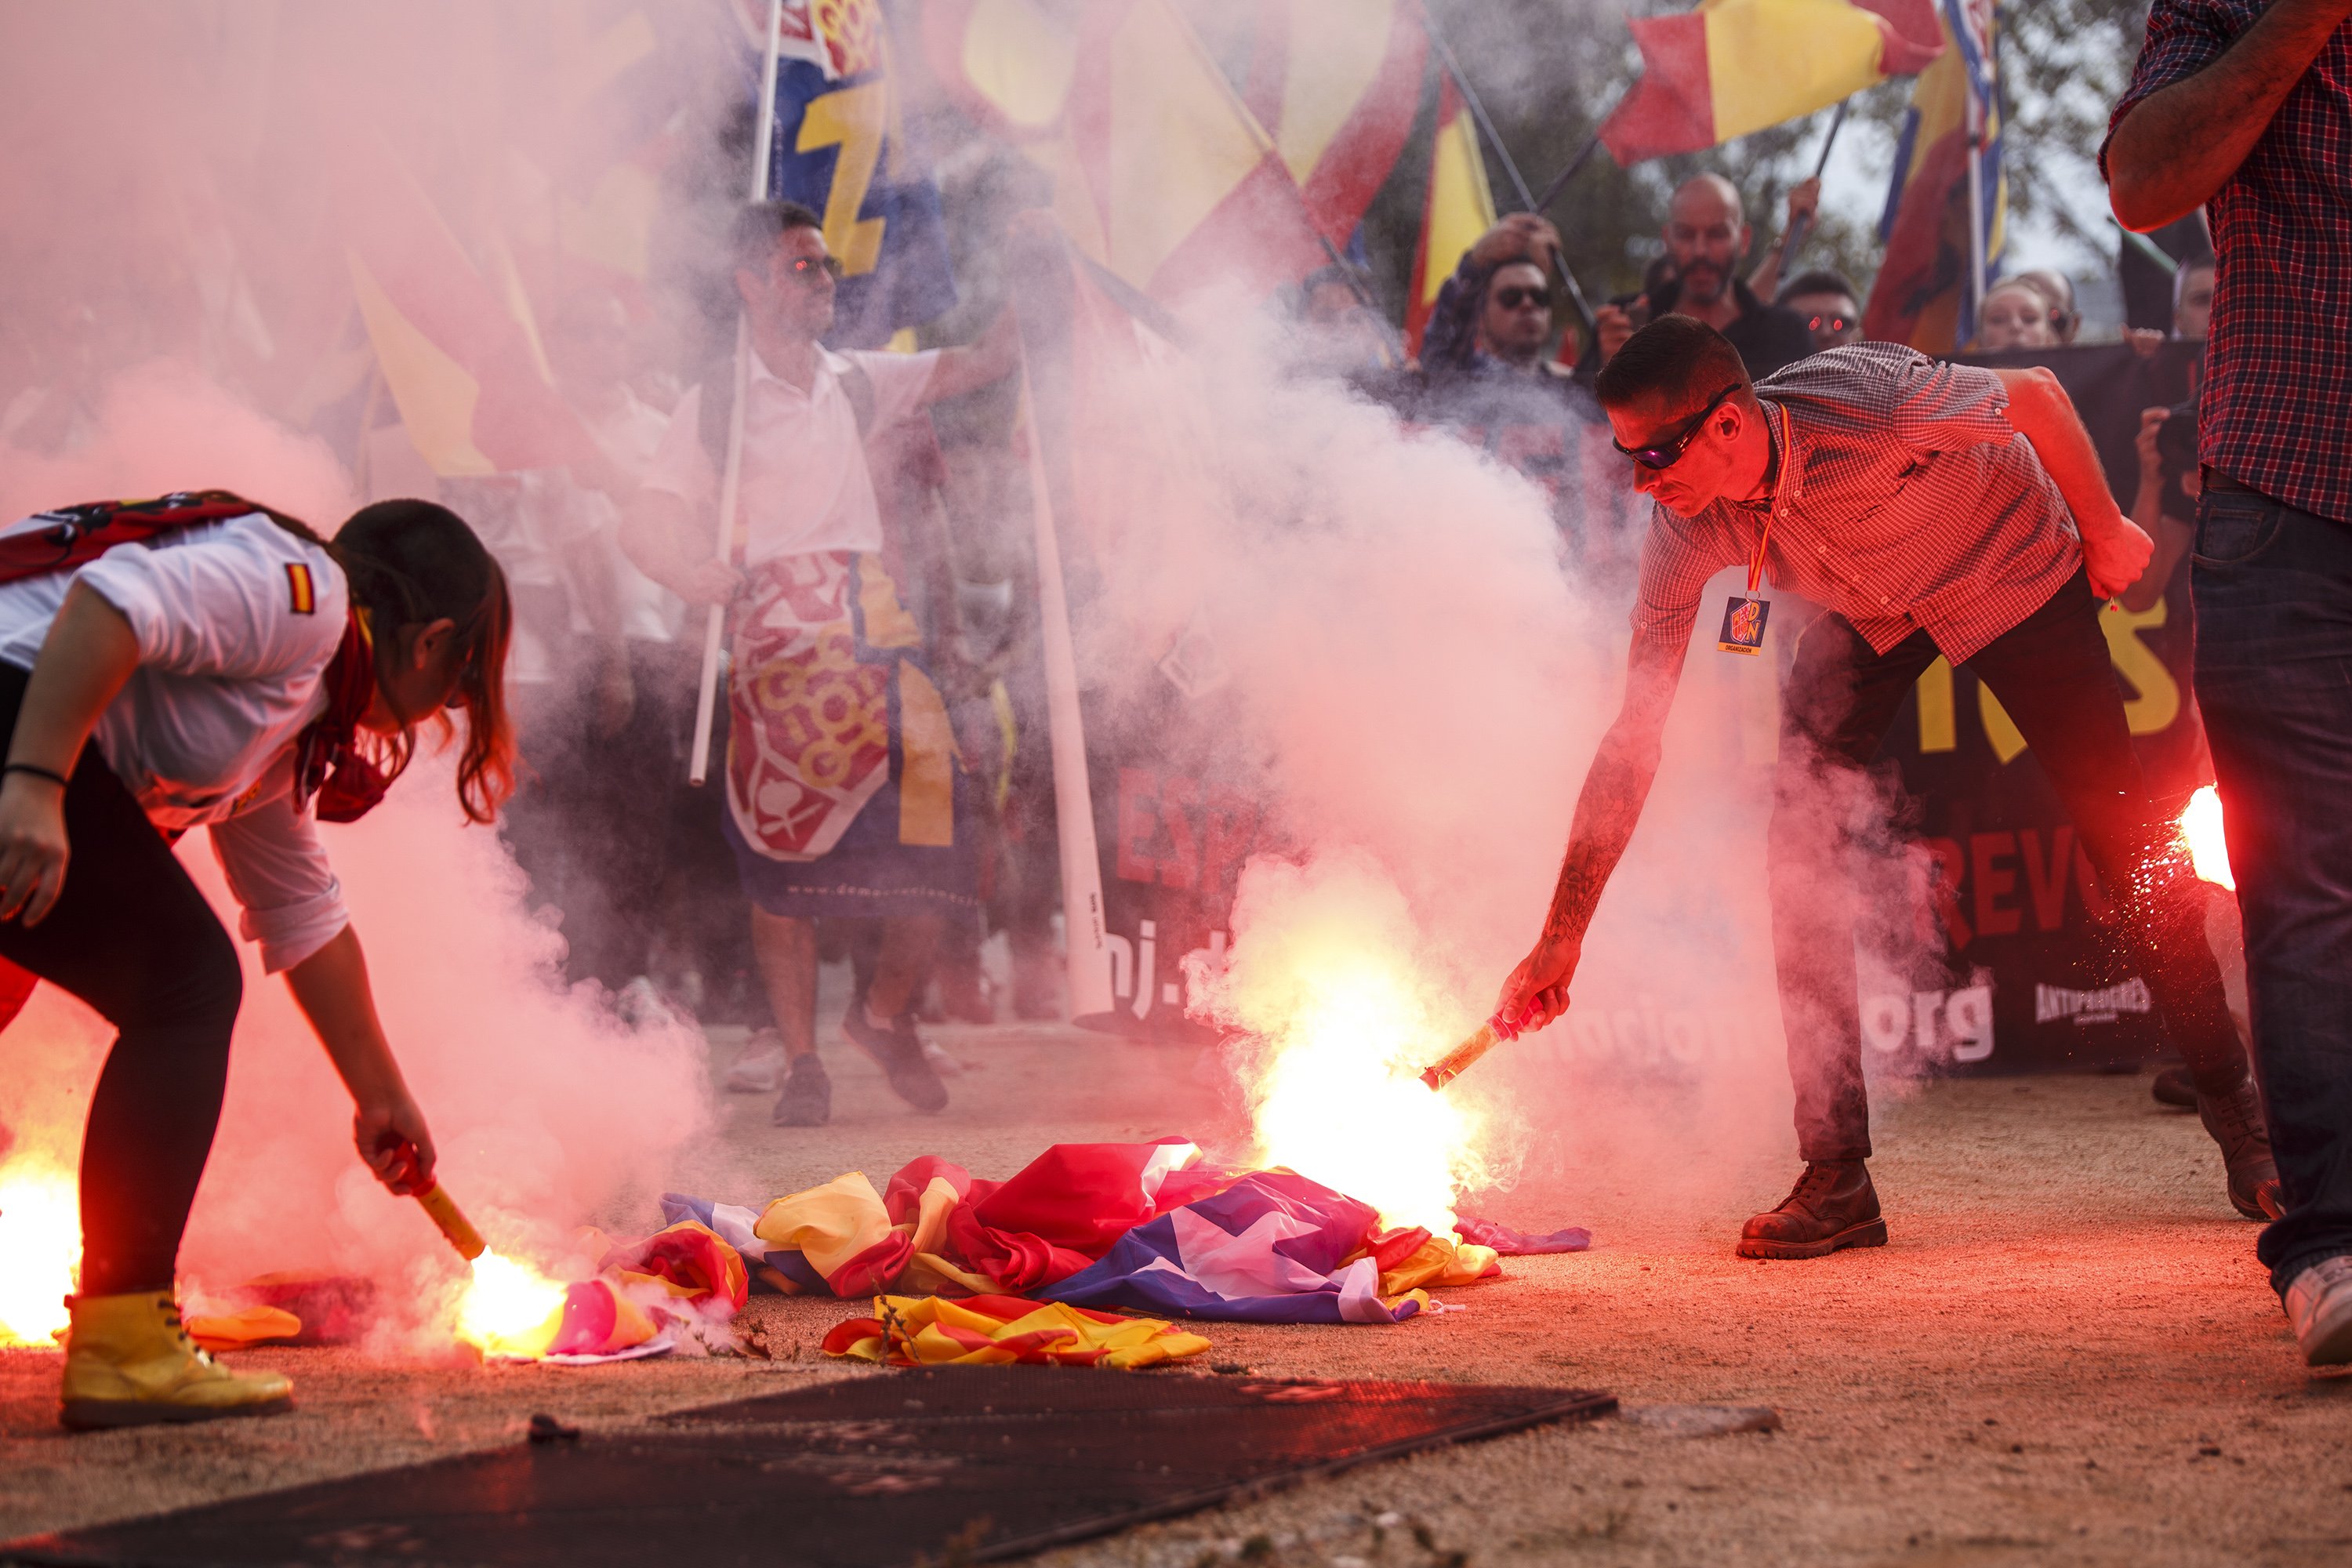 Galeria: Cremen estelades a la manifestació ultra de Montjuïc